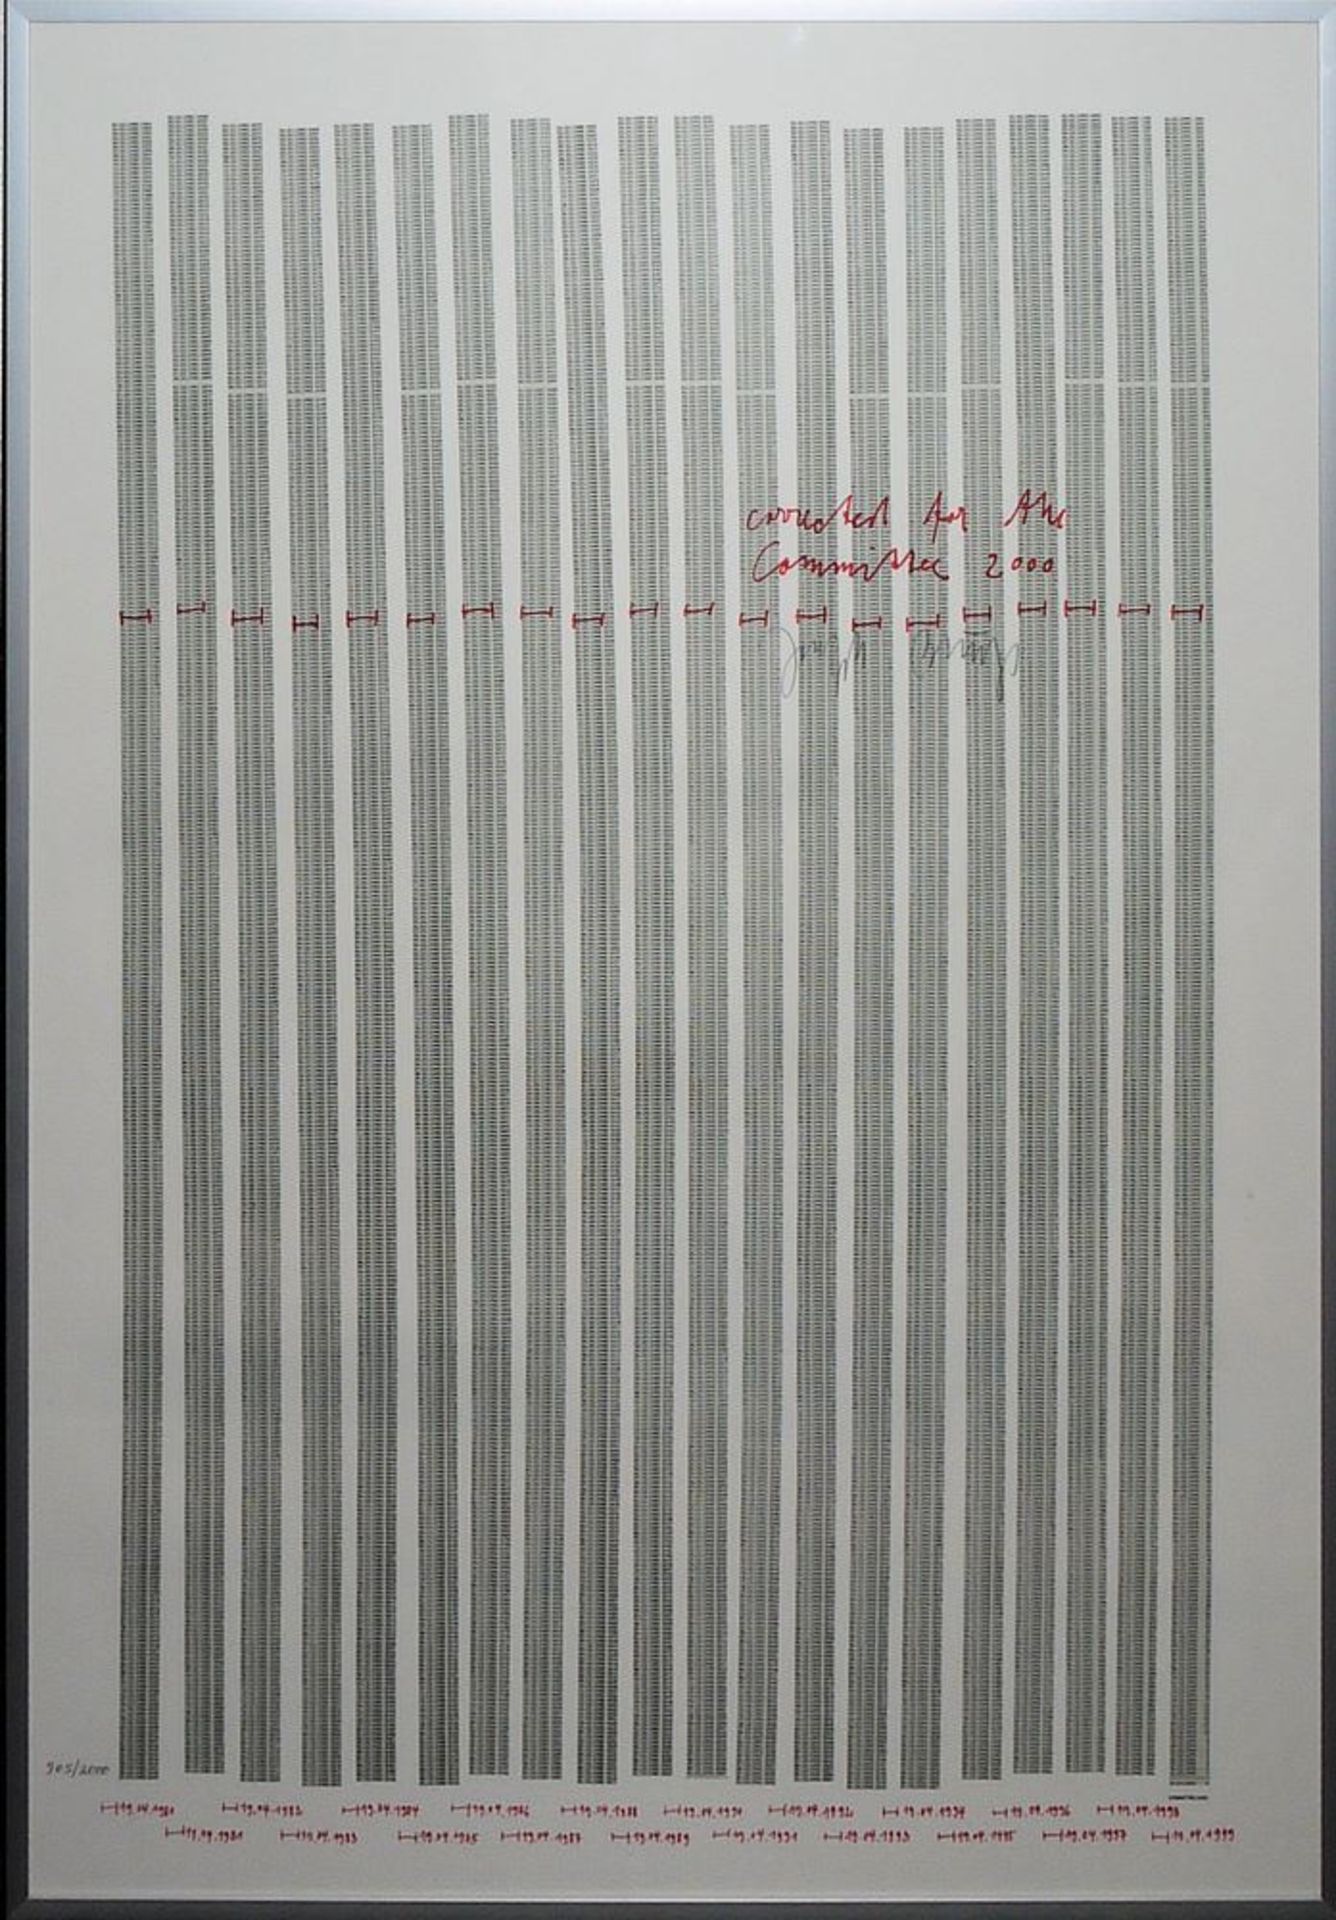 Joseph Beuys, Countdown 2000, signiertes Farboffset von 1981, gerahmt